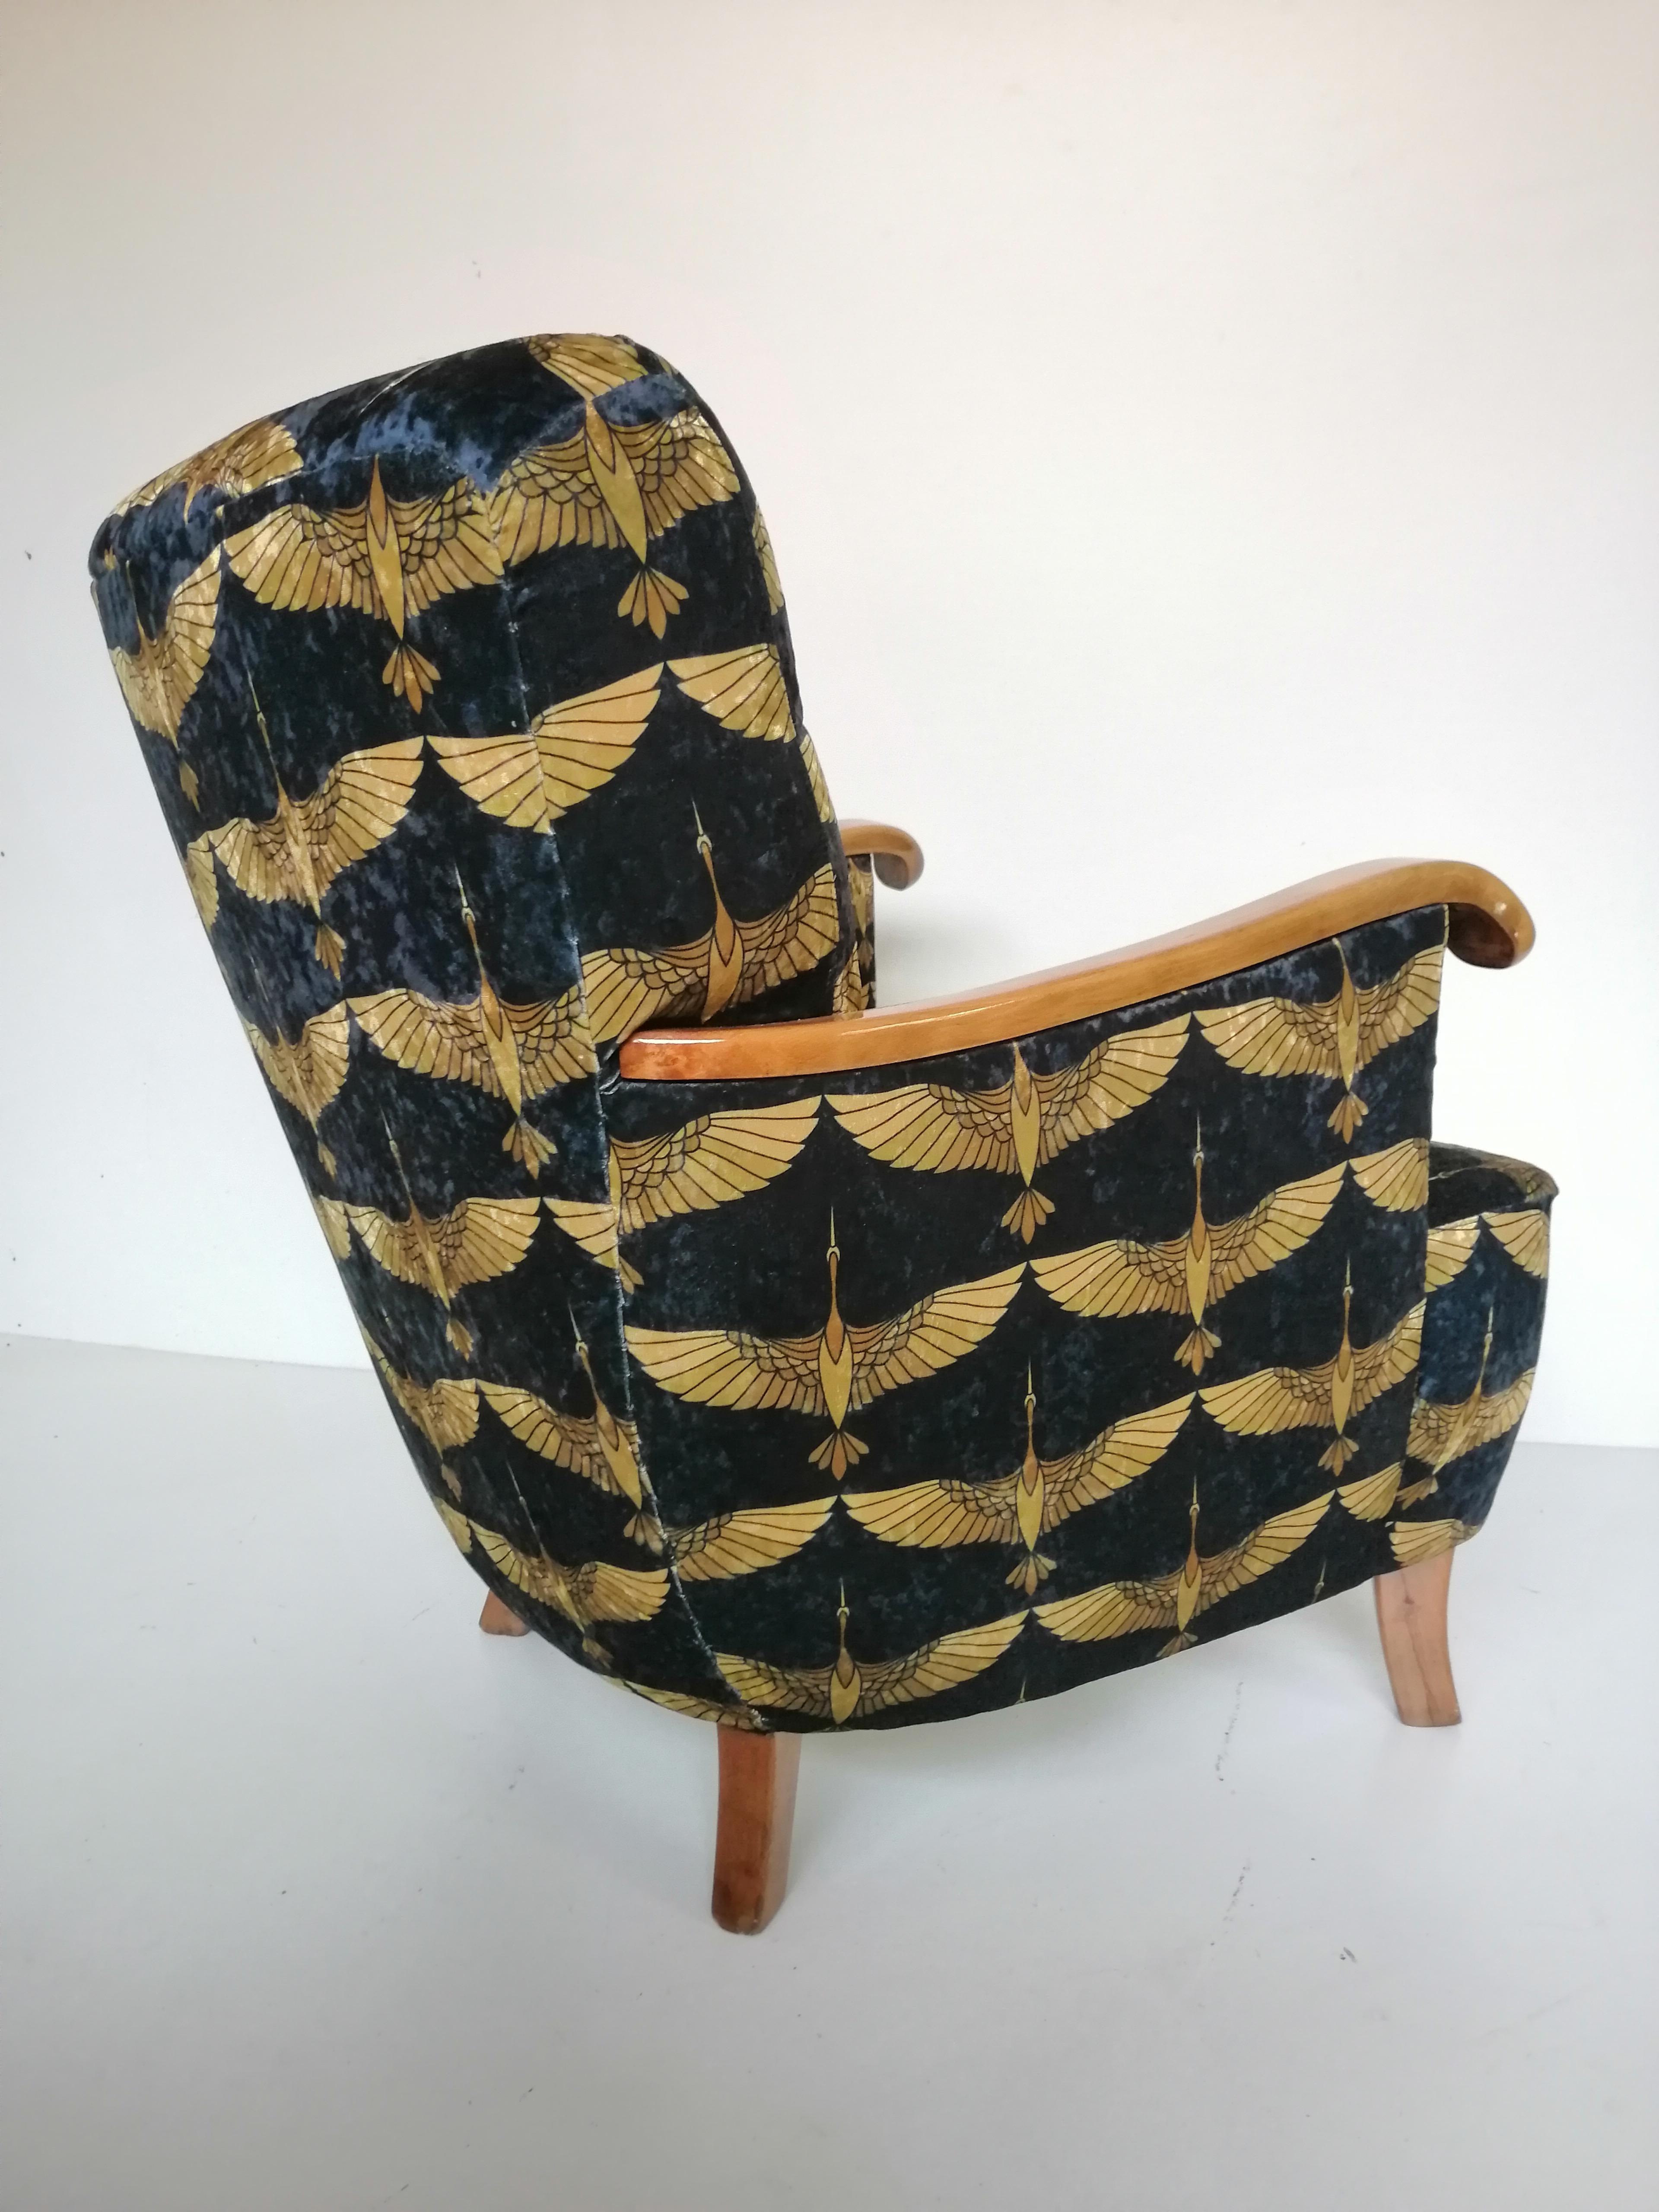 Art-Déco-Sessel aus der Tschechischen Republik von 1930.

Jedes Möbelstück, das unsere Werkstatt verlässt, wird von Anfang bis Ende einer manuellen Renovierung unterzogen, um den ursprünglichen Zustand von vor vielen Jahren wiederherzustellen (es